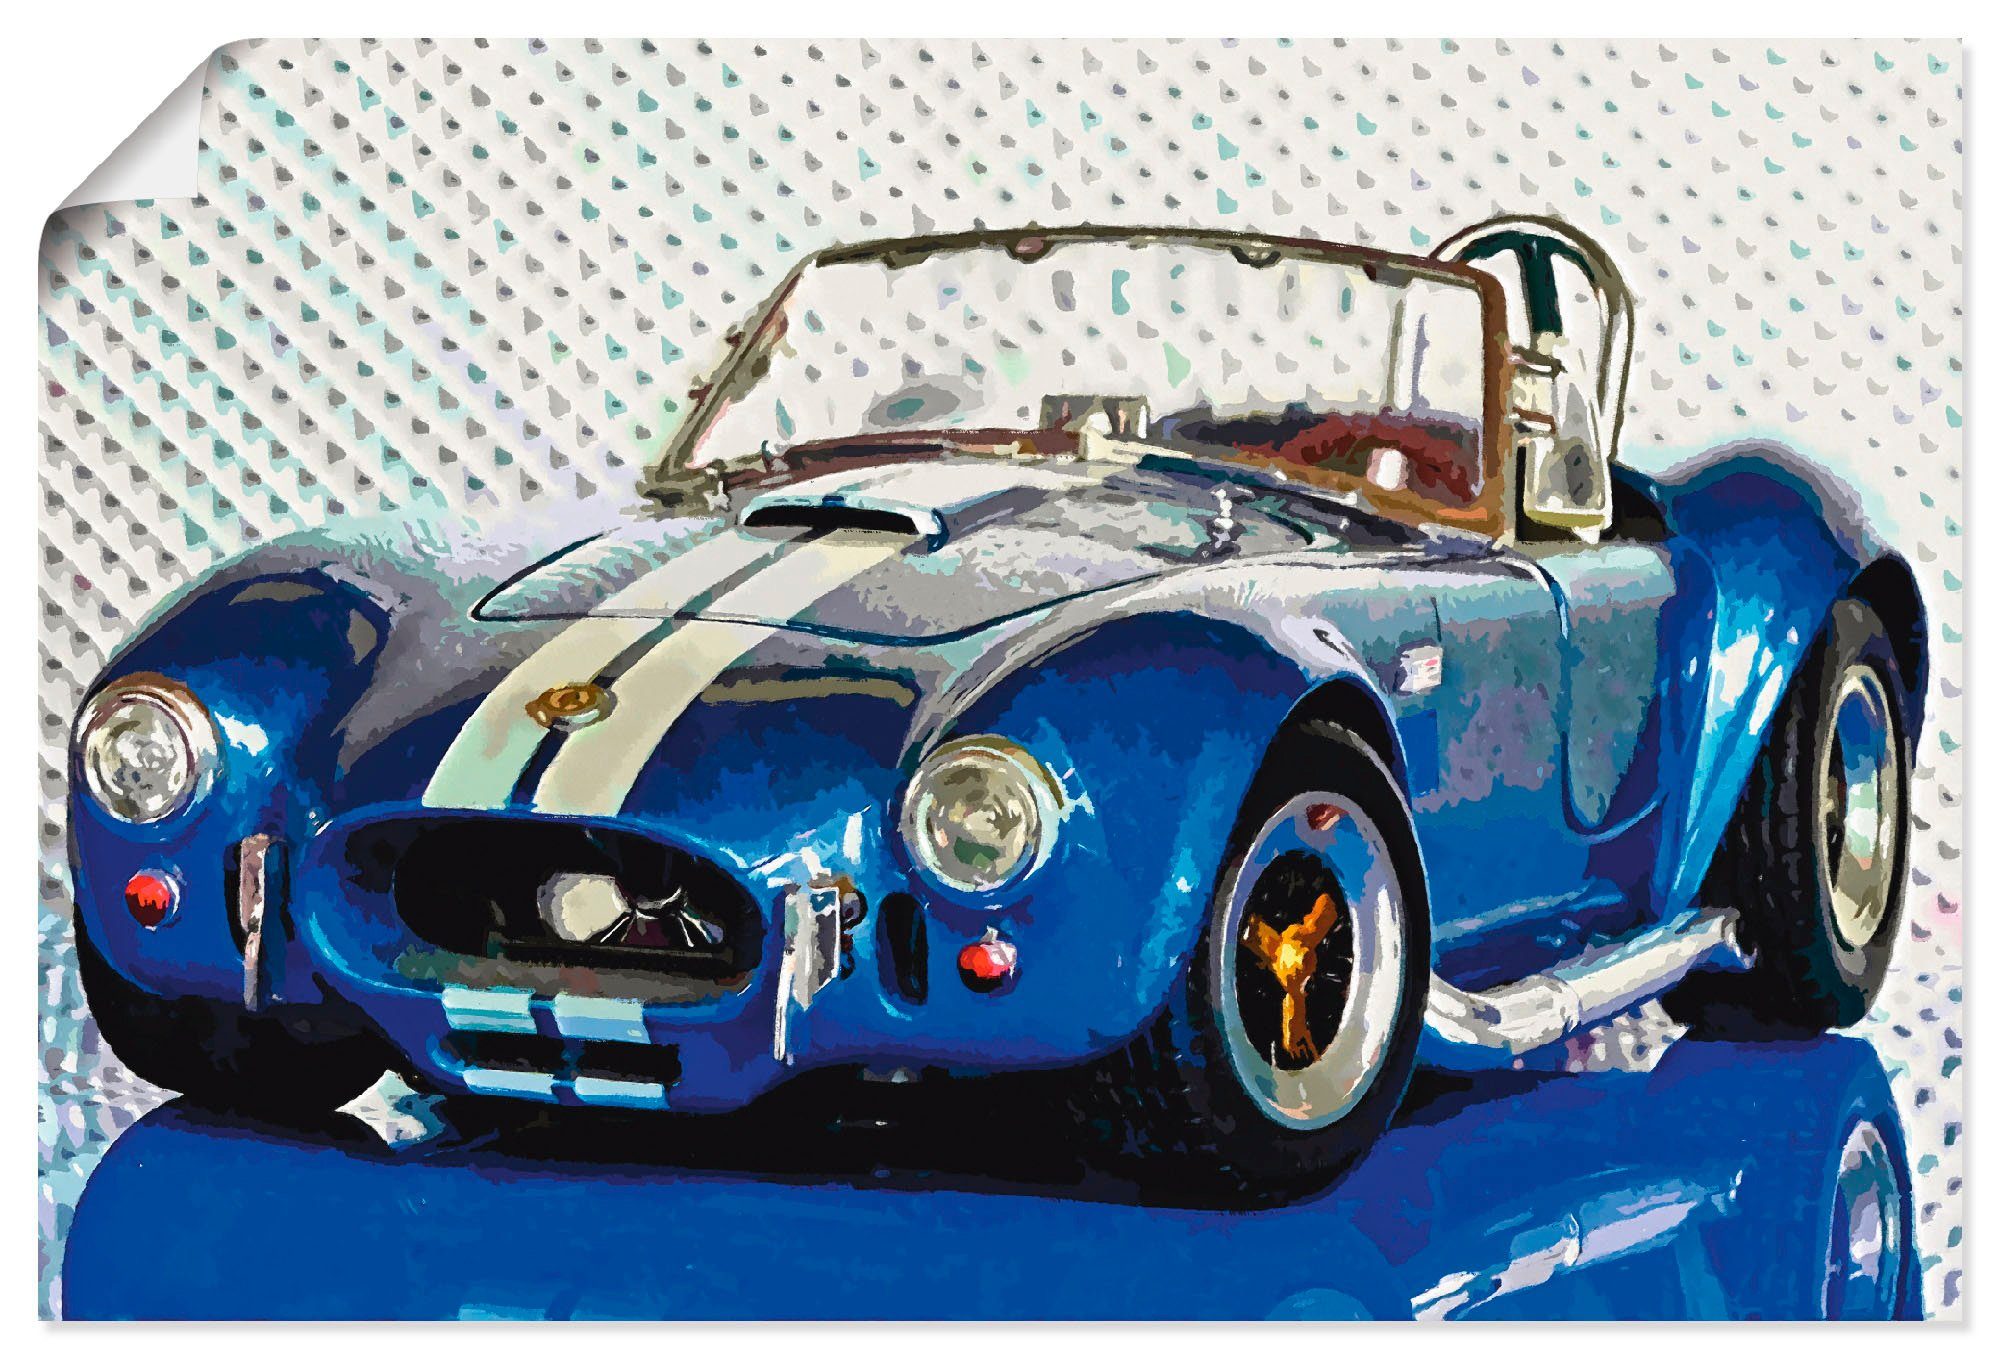 Artland Artprint Shelby Cobra blauw in vele afmetingen & productsoorten - artprint van aluminium / artprint voor buiten, artprint op linnen, poster, muursticker / wandfolie ook ges